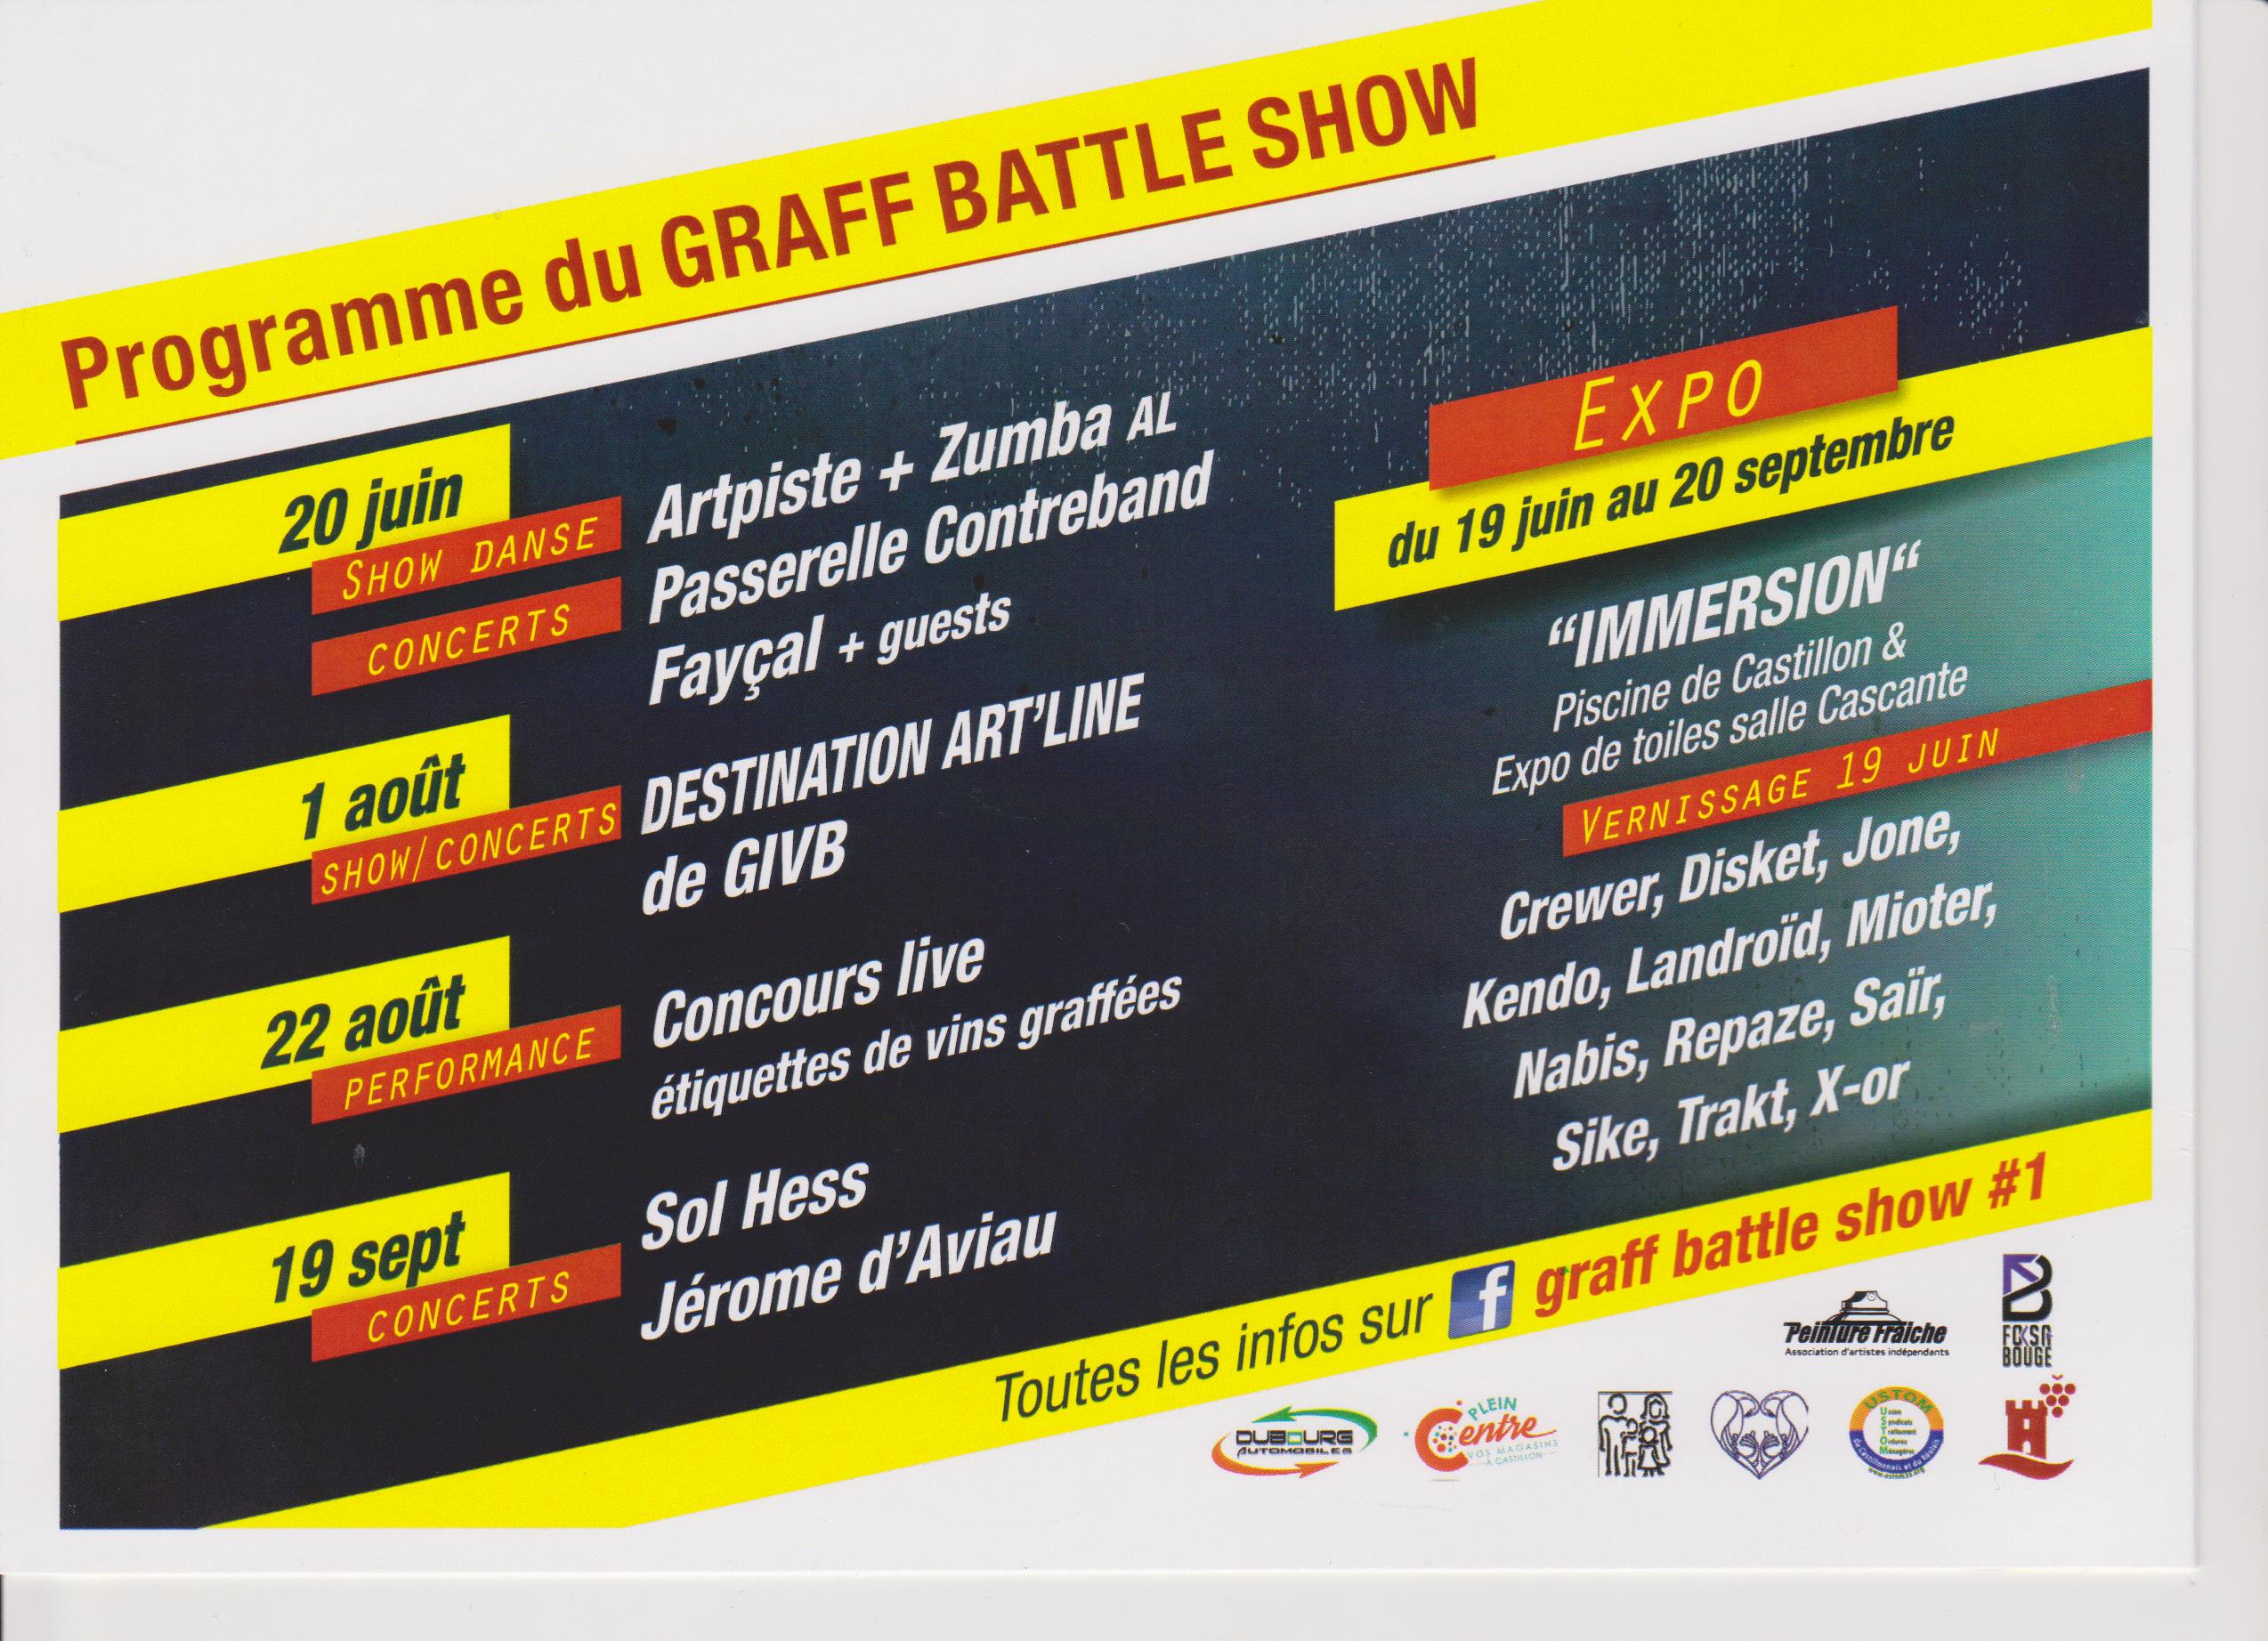 Programme Du Graff Battle Show Mairie De Castillon La Bataille Site De La Mairie De Castillon La Bataille